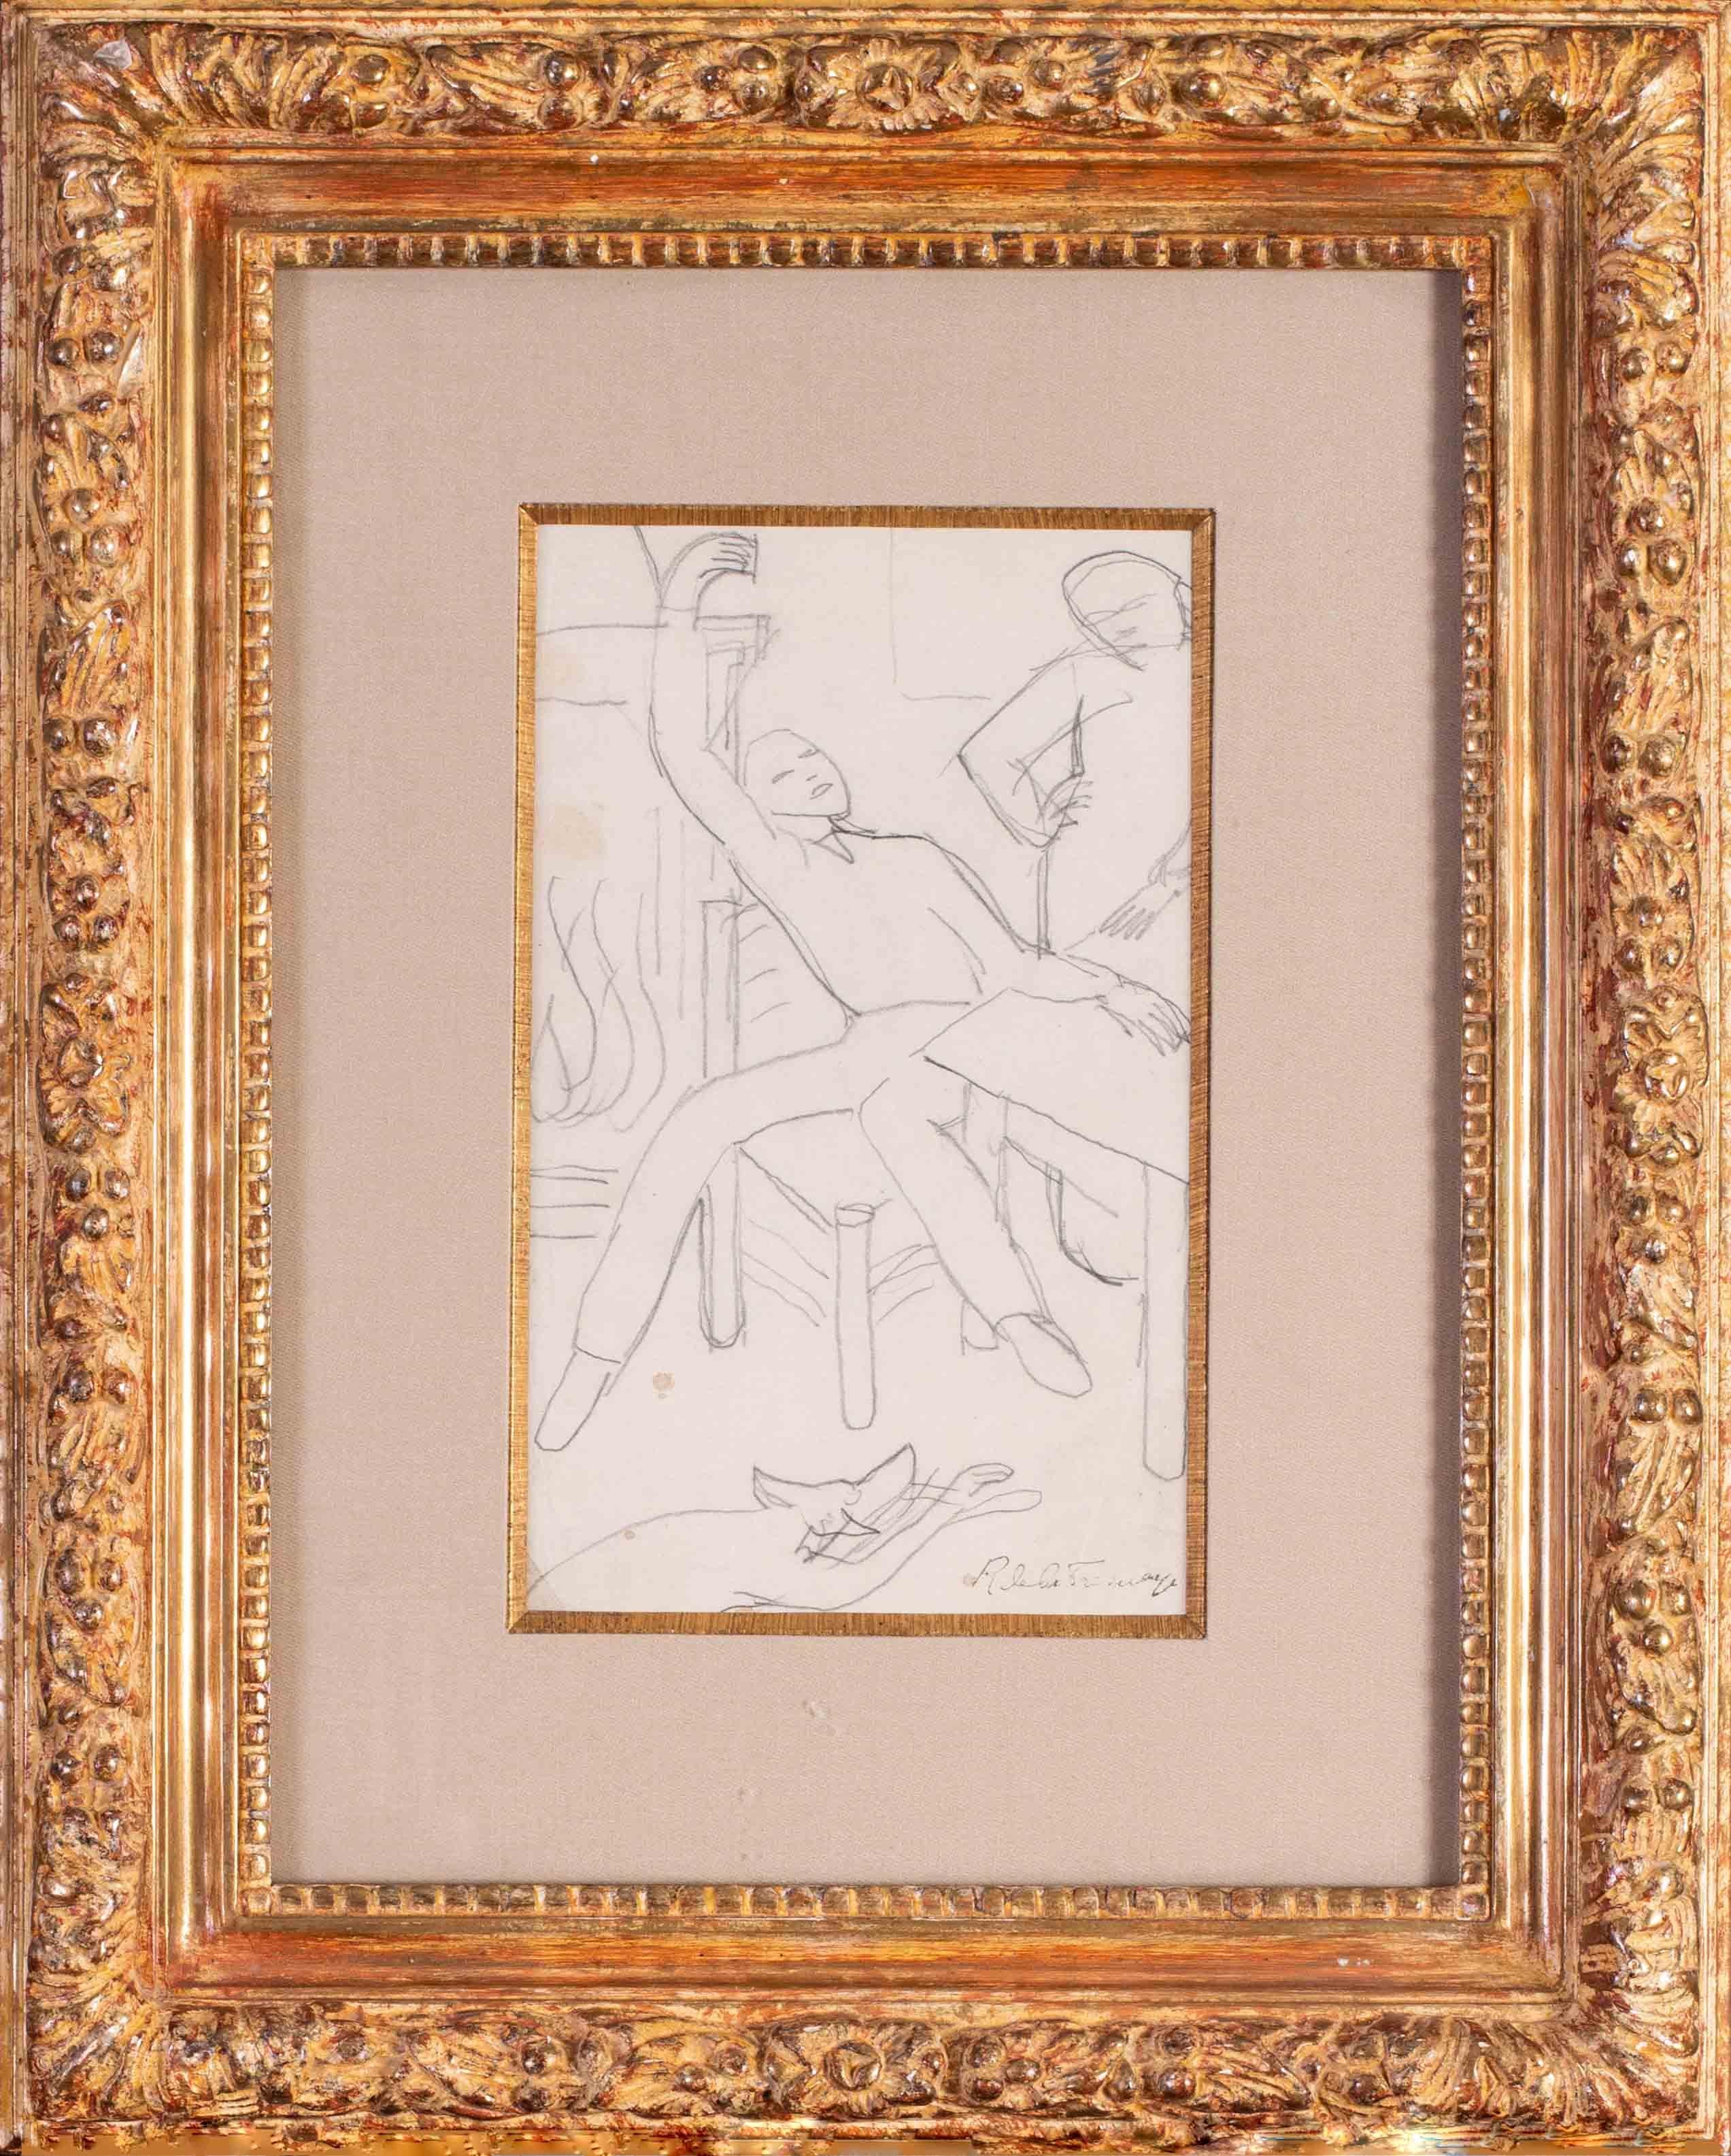 Roger de la Fresnaye Figurative Art - Early 20th Century French drawing by Cubist artist de La Fresnaye